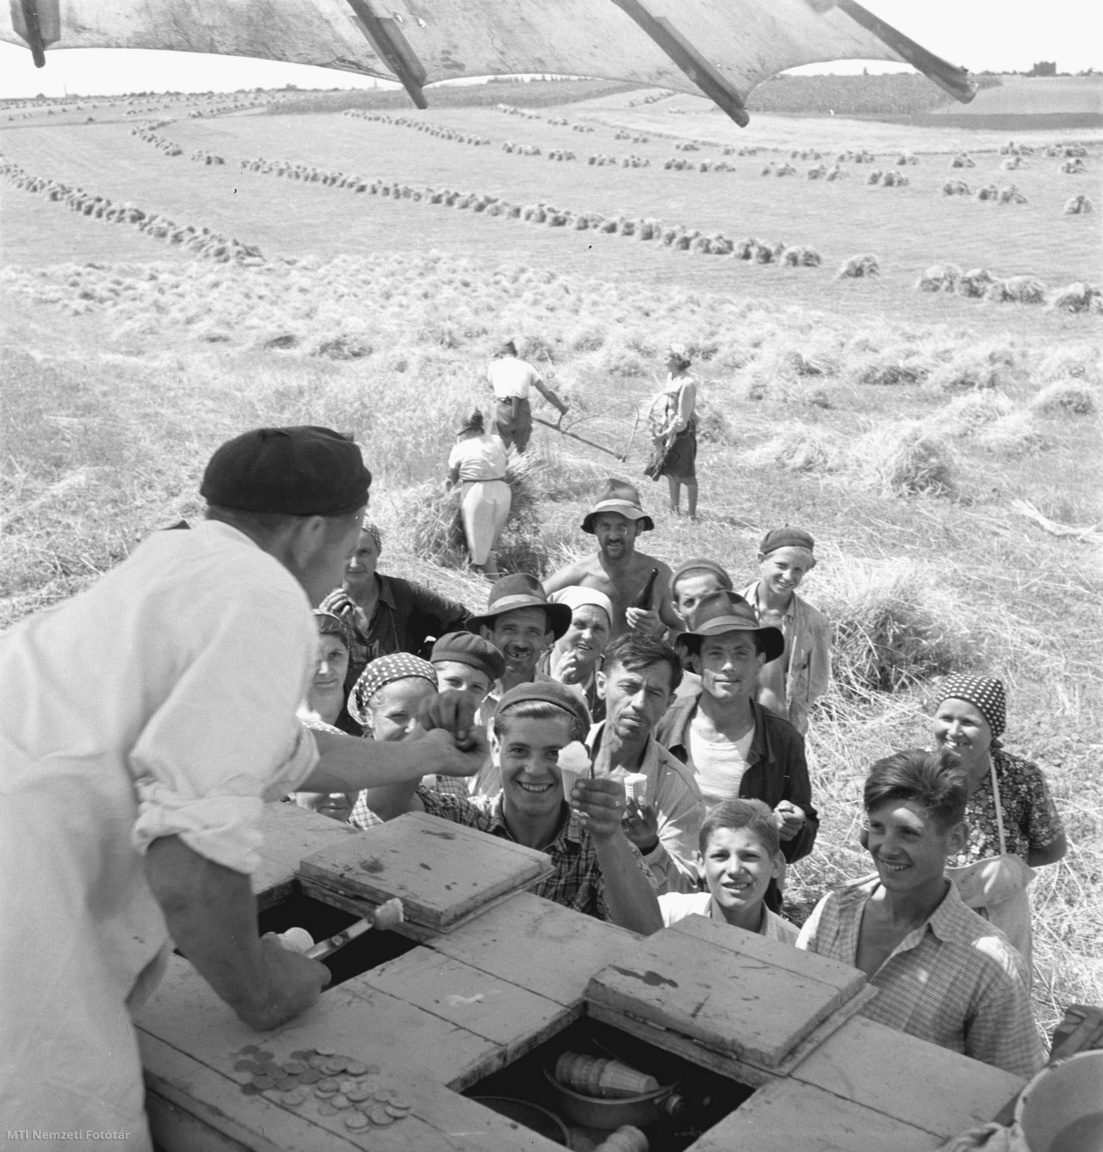 Kaposvár, 1956. július 20. A kaposvári földműves szövetkezet mozgóboltja a kaposvári Szabadságzászló termelőszövetkezet aratóit frissítő italokkal és fagylalttal látja el.